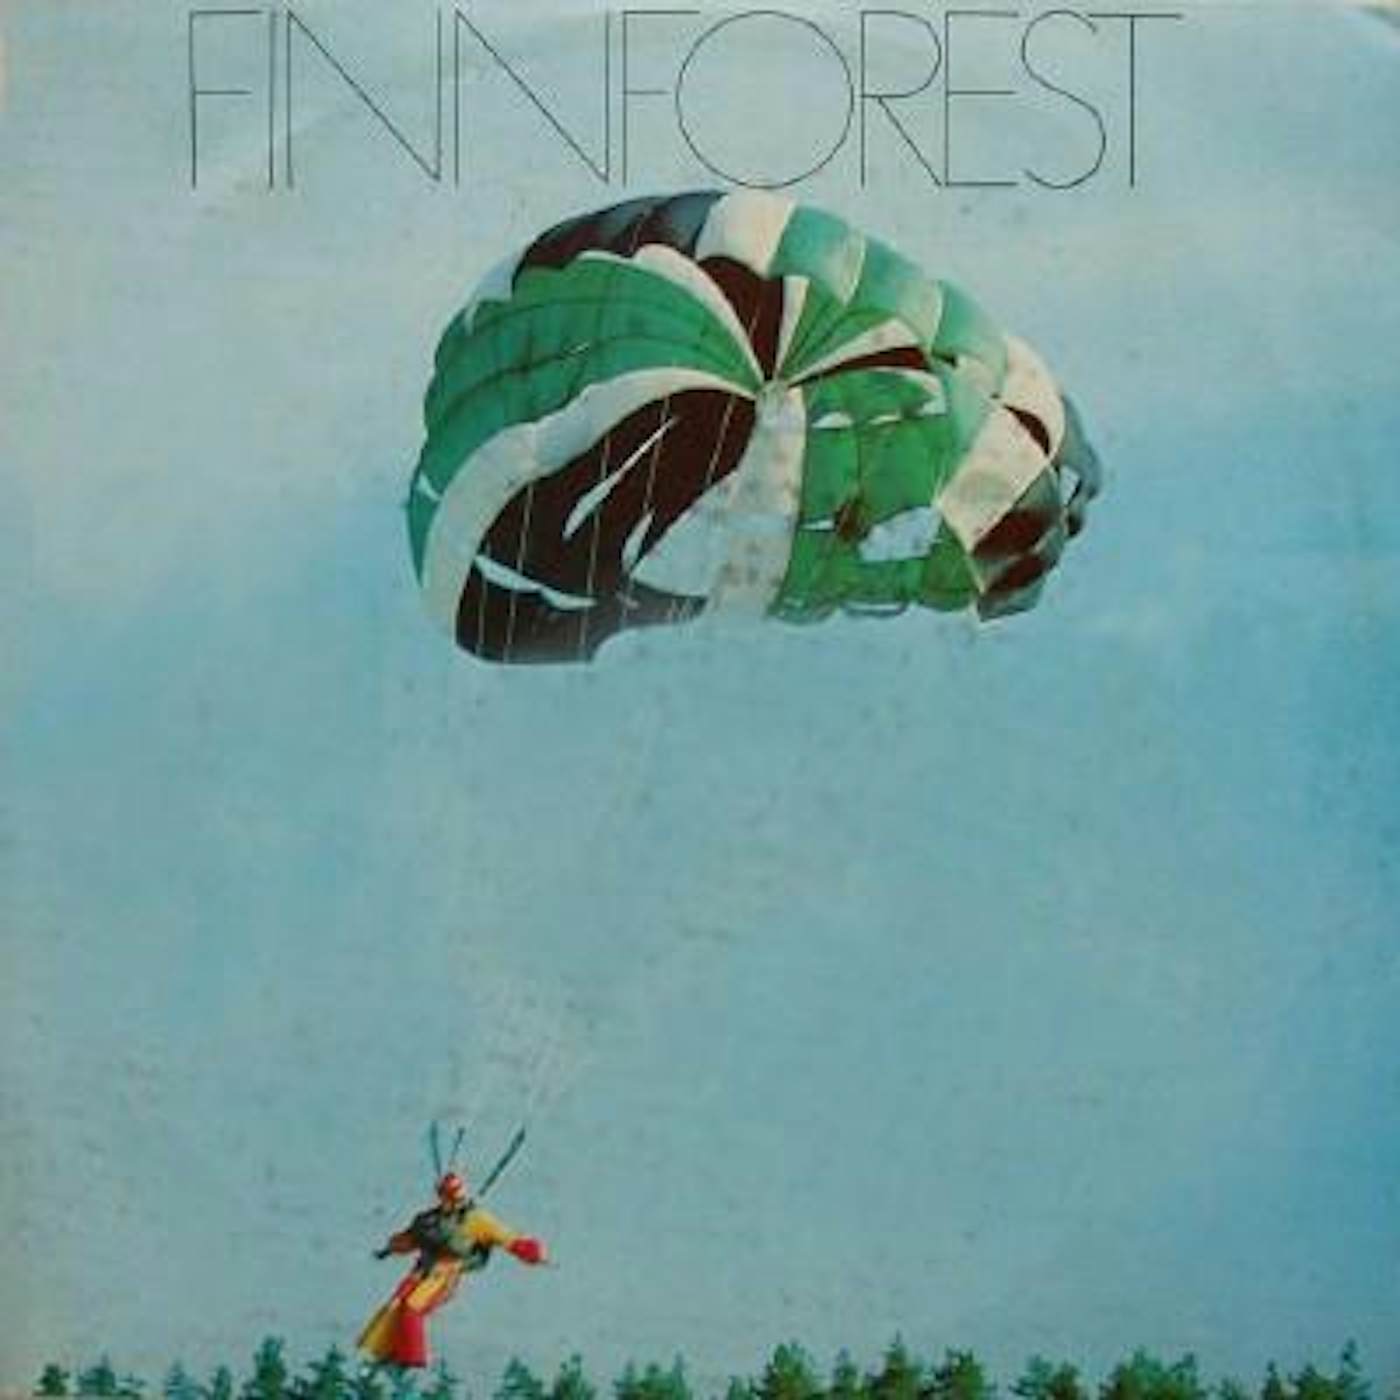 Finnforest Vinyl Record